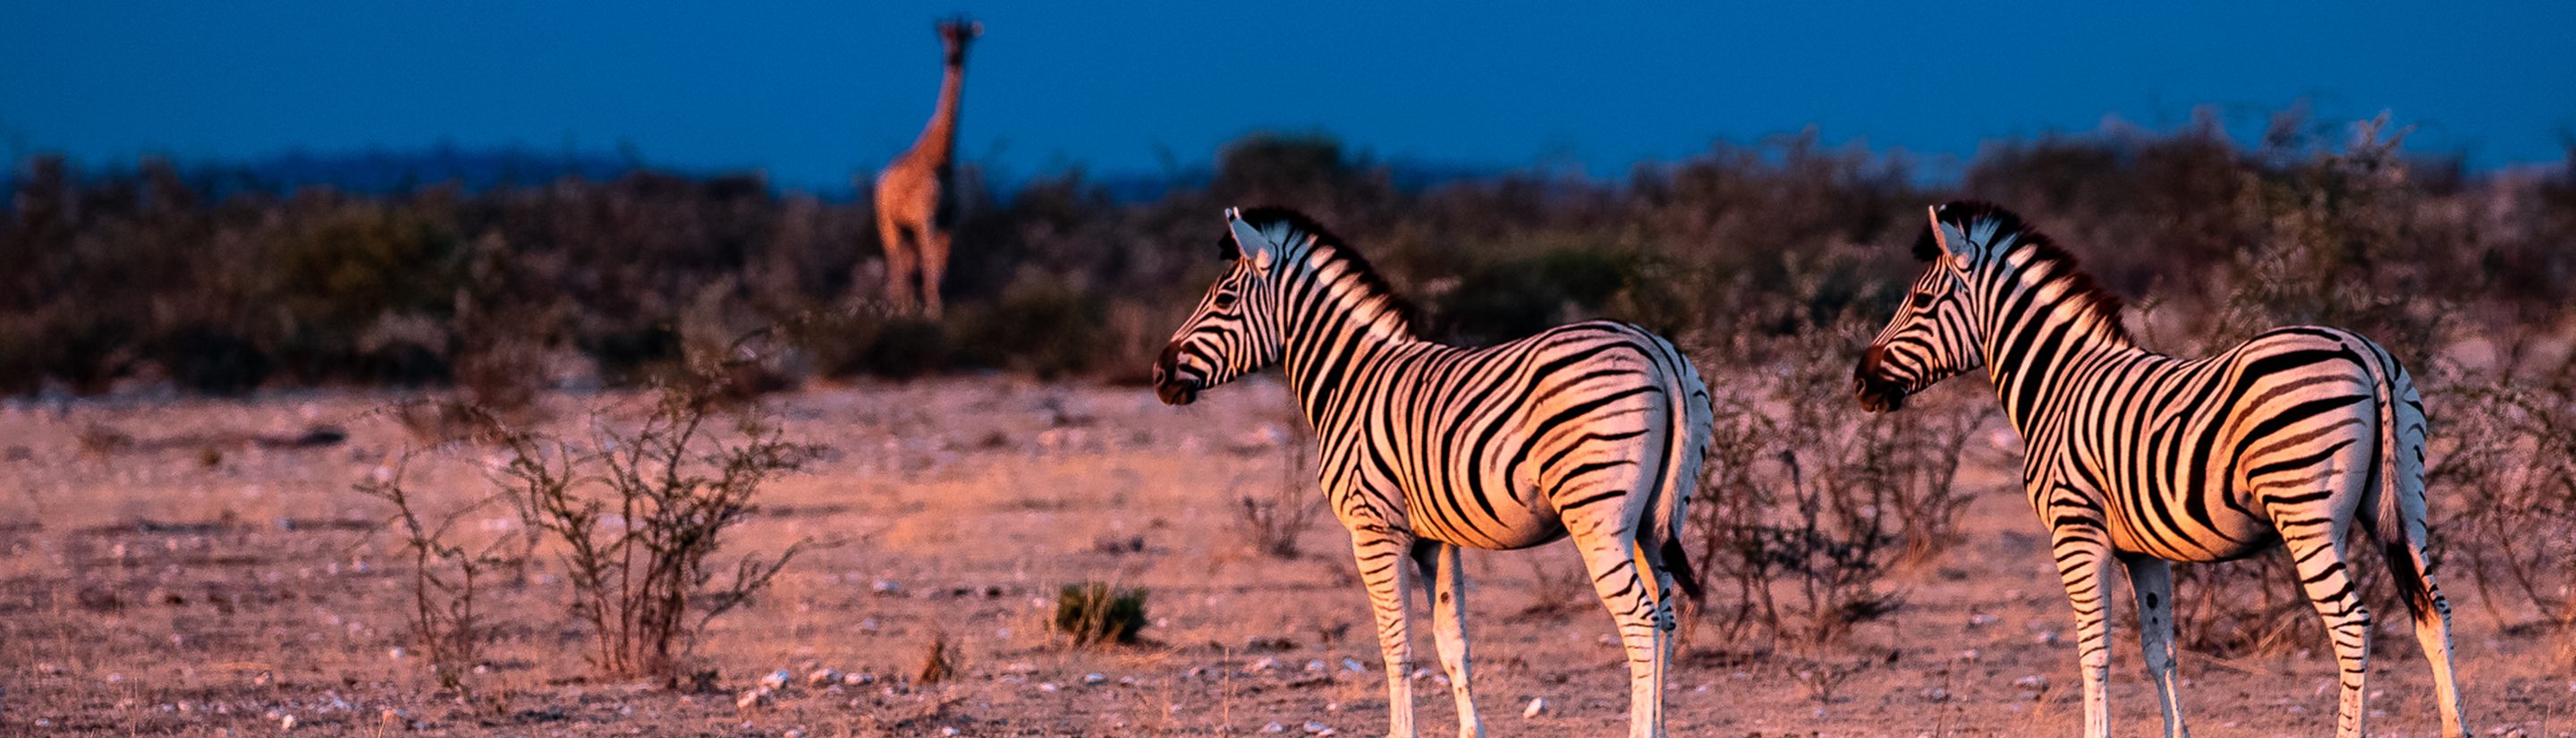 Etosha Nationalpark – Tipps für Ihre Safari in Namibia